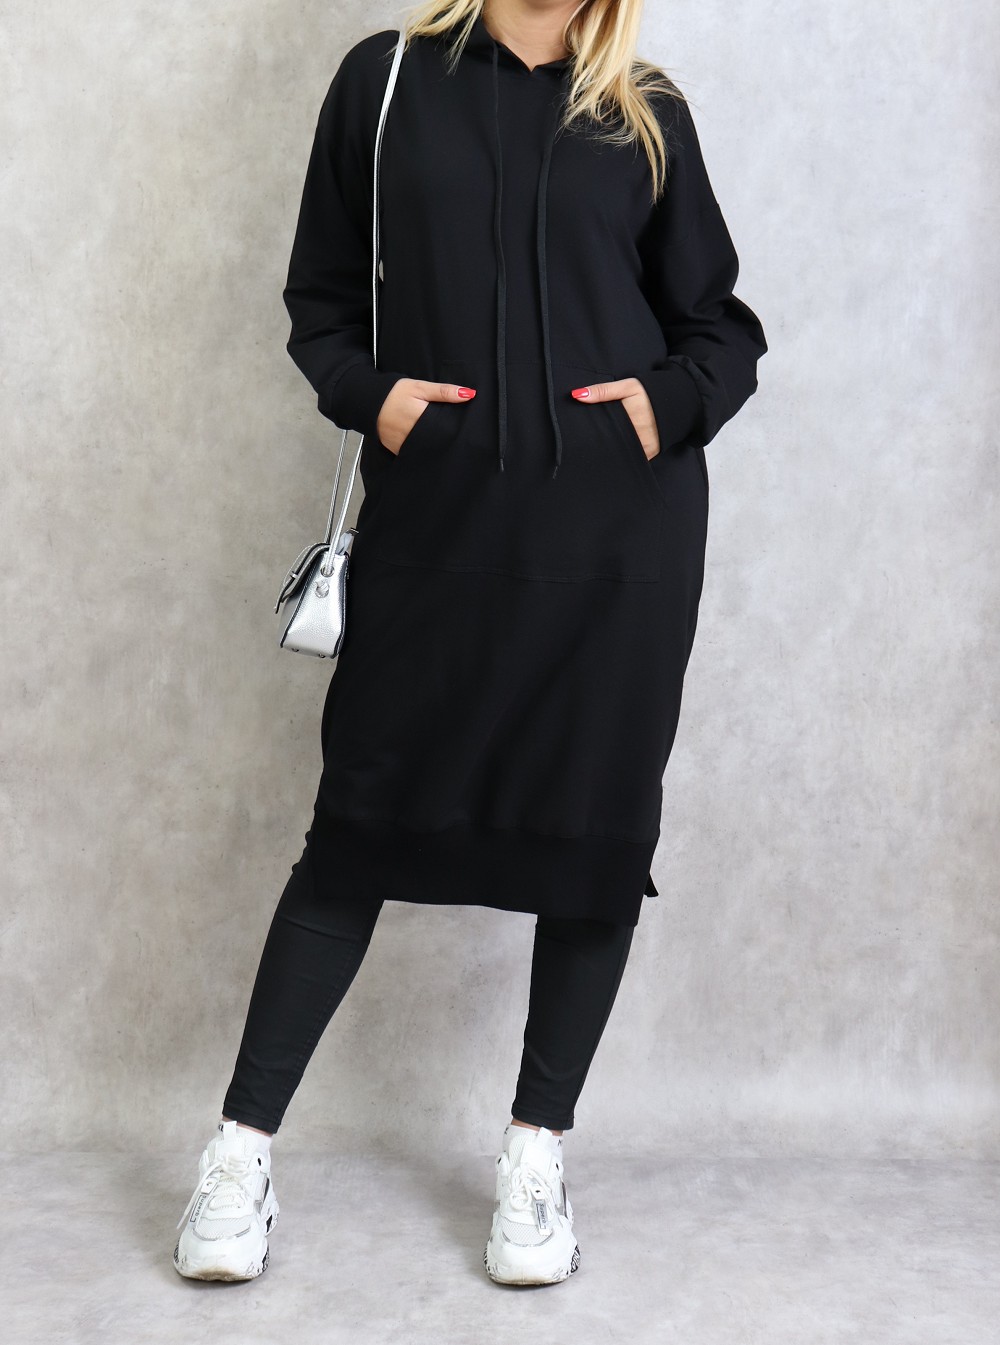 Hoodie à slogan imprimé Coton Vetements en coloris Noir Femme Vêtements Articles de sport et dentraînement Sweats à capuche 